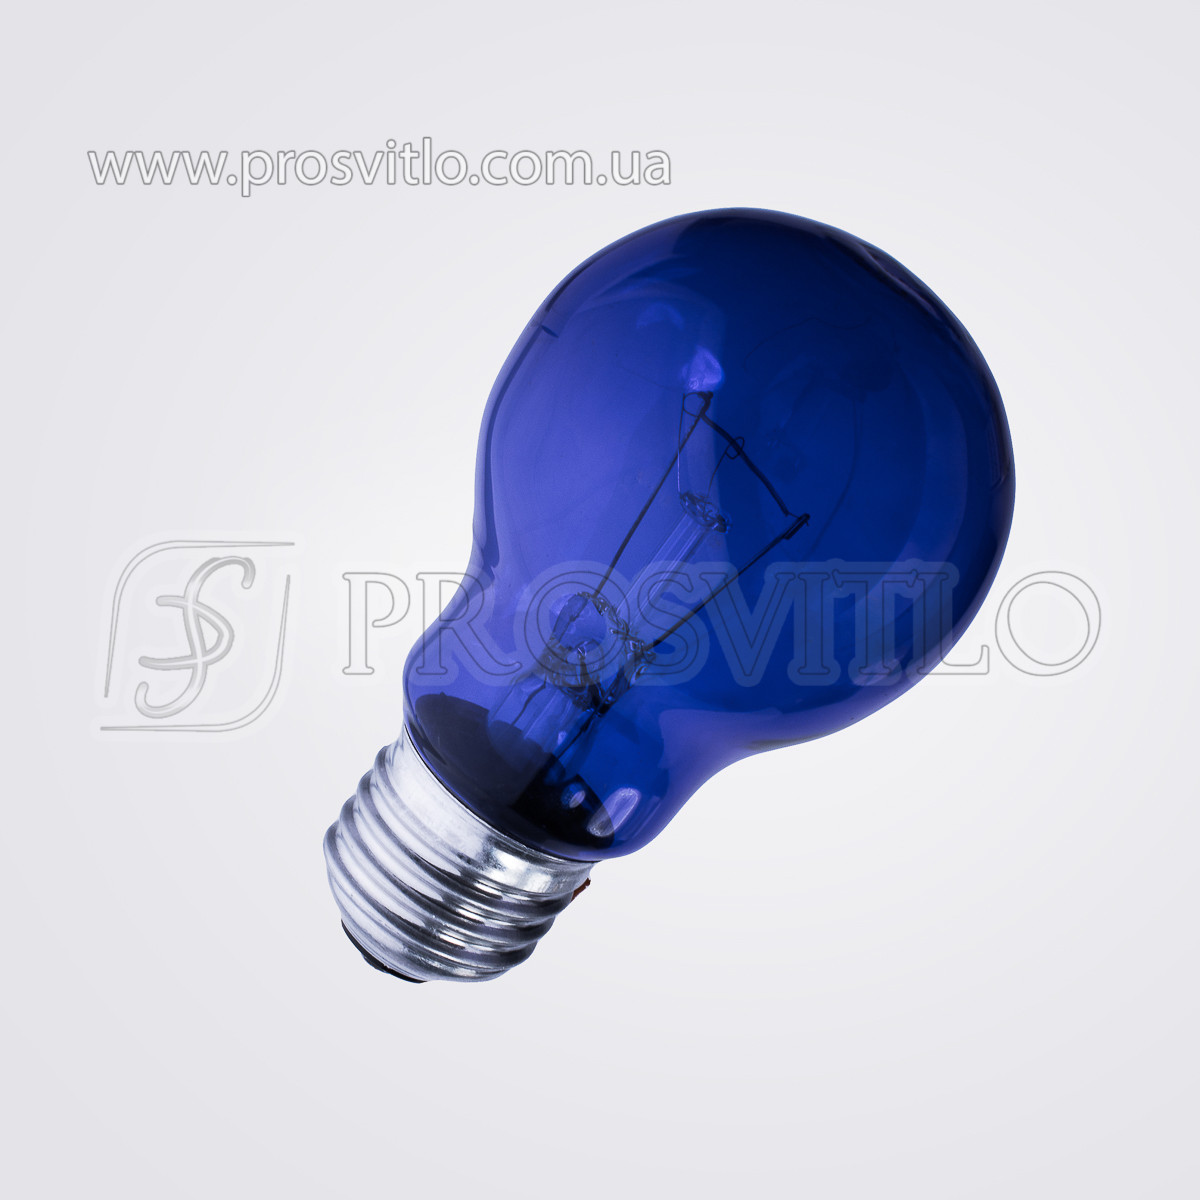 Синя лампа для рефлектора Мініна БС 220-60, Е27